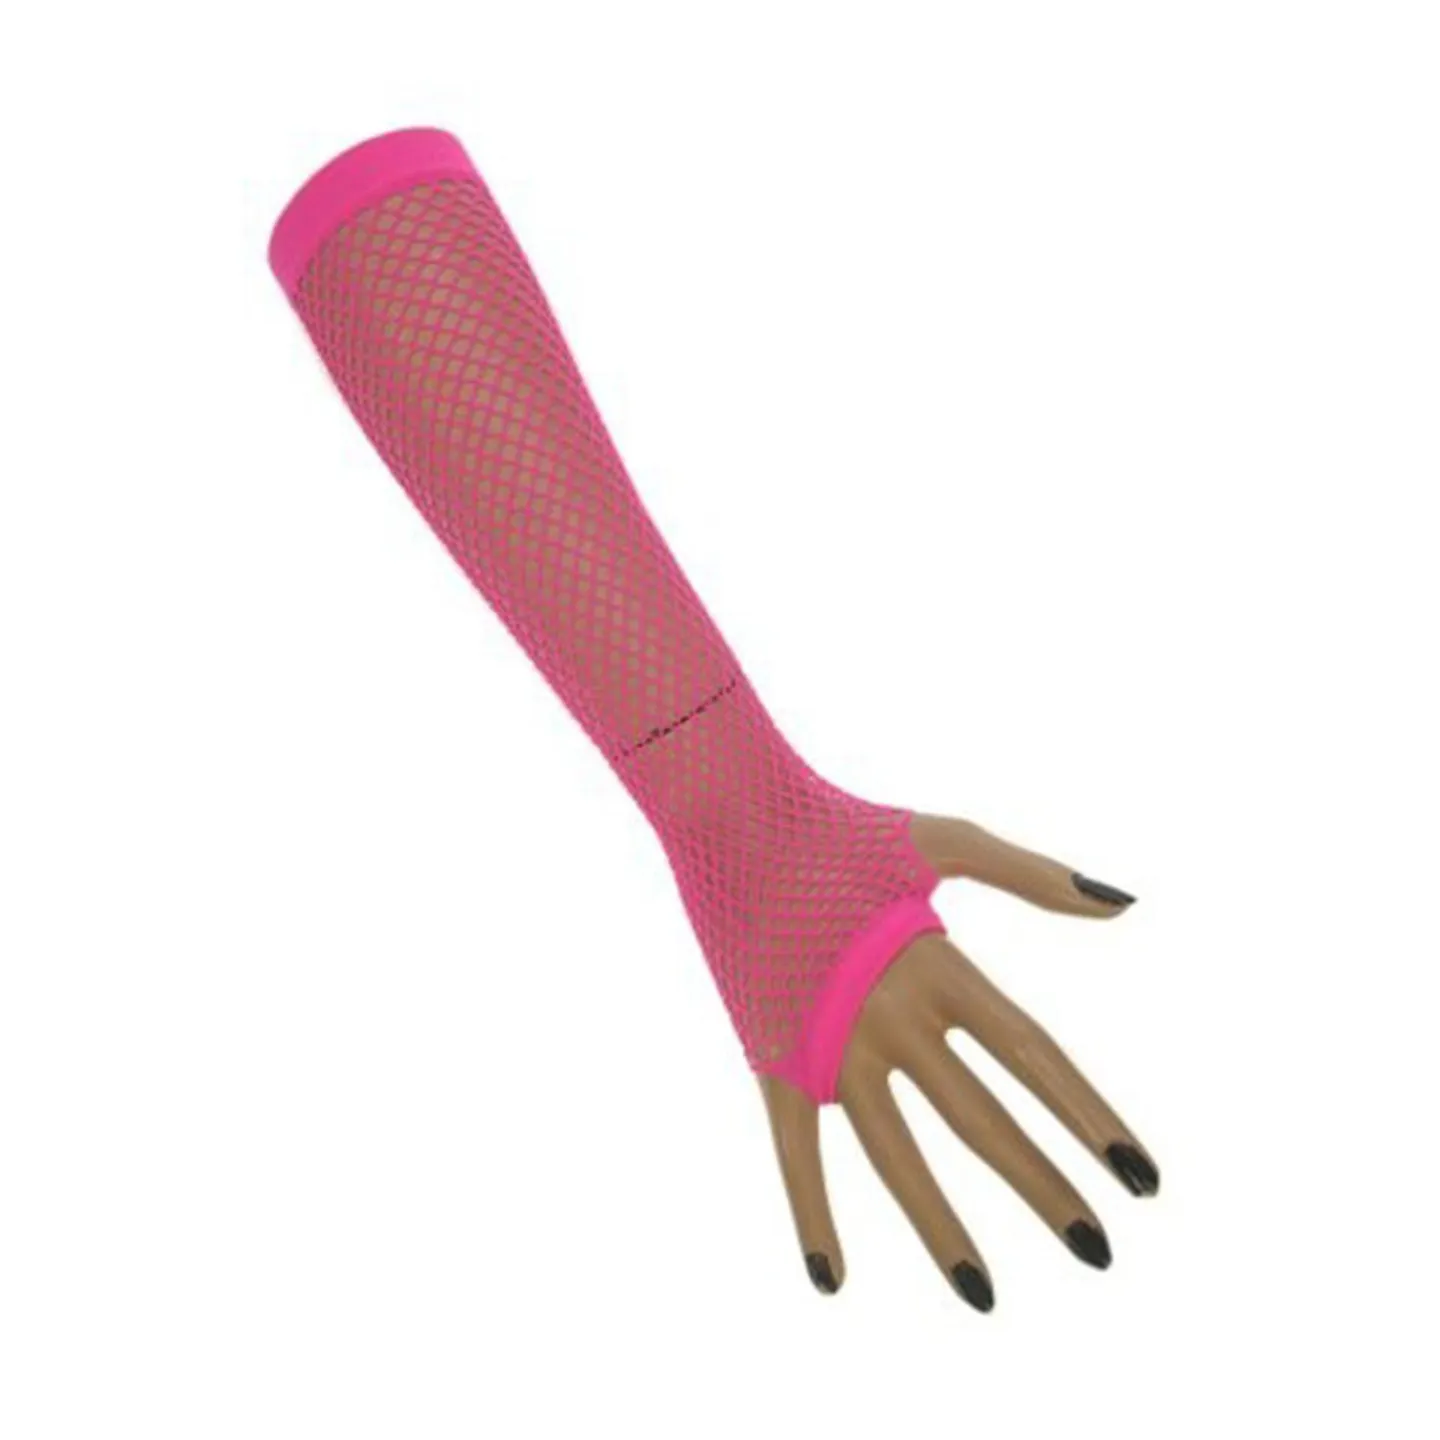 Visnet handschoenen lang fluor roze kopen.